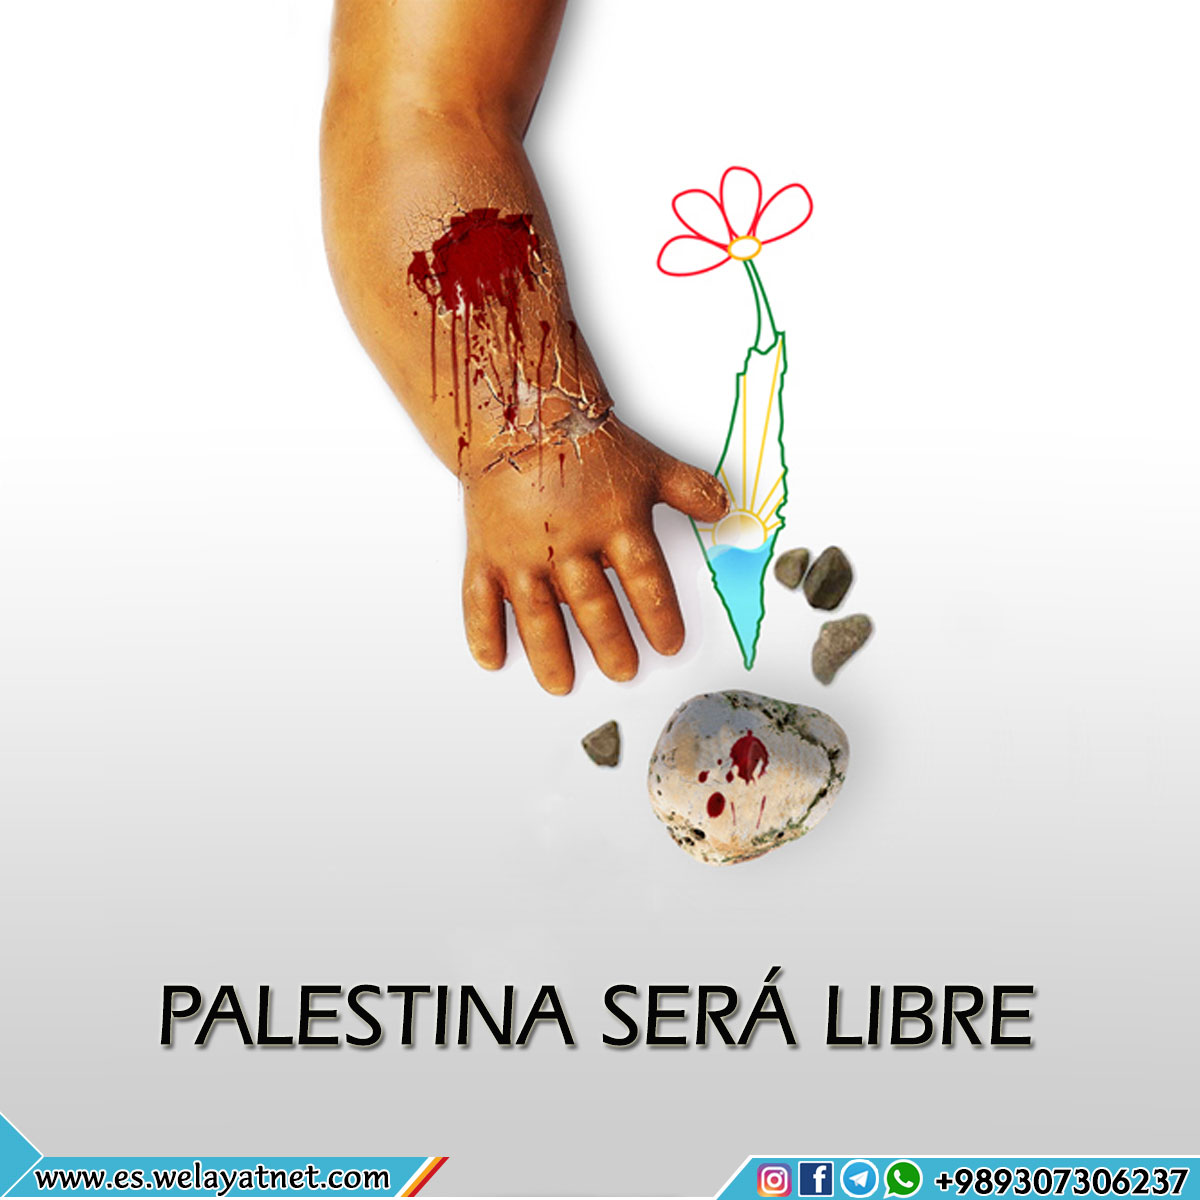 Palestina será libre